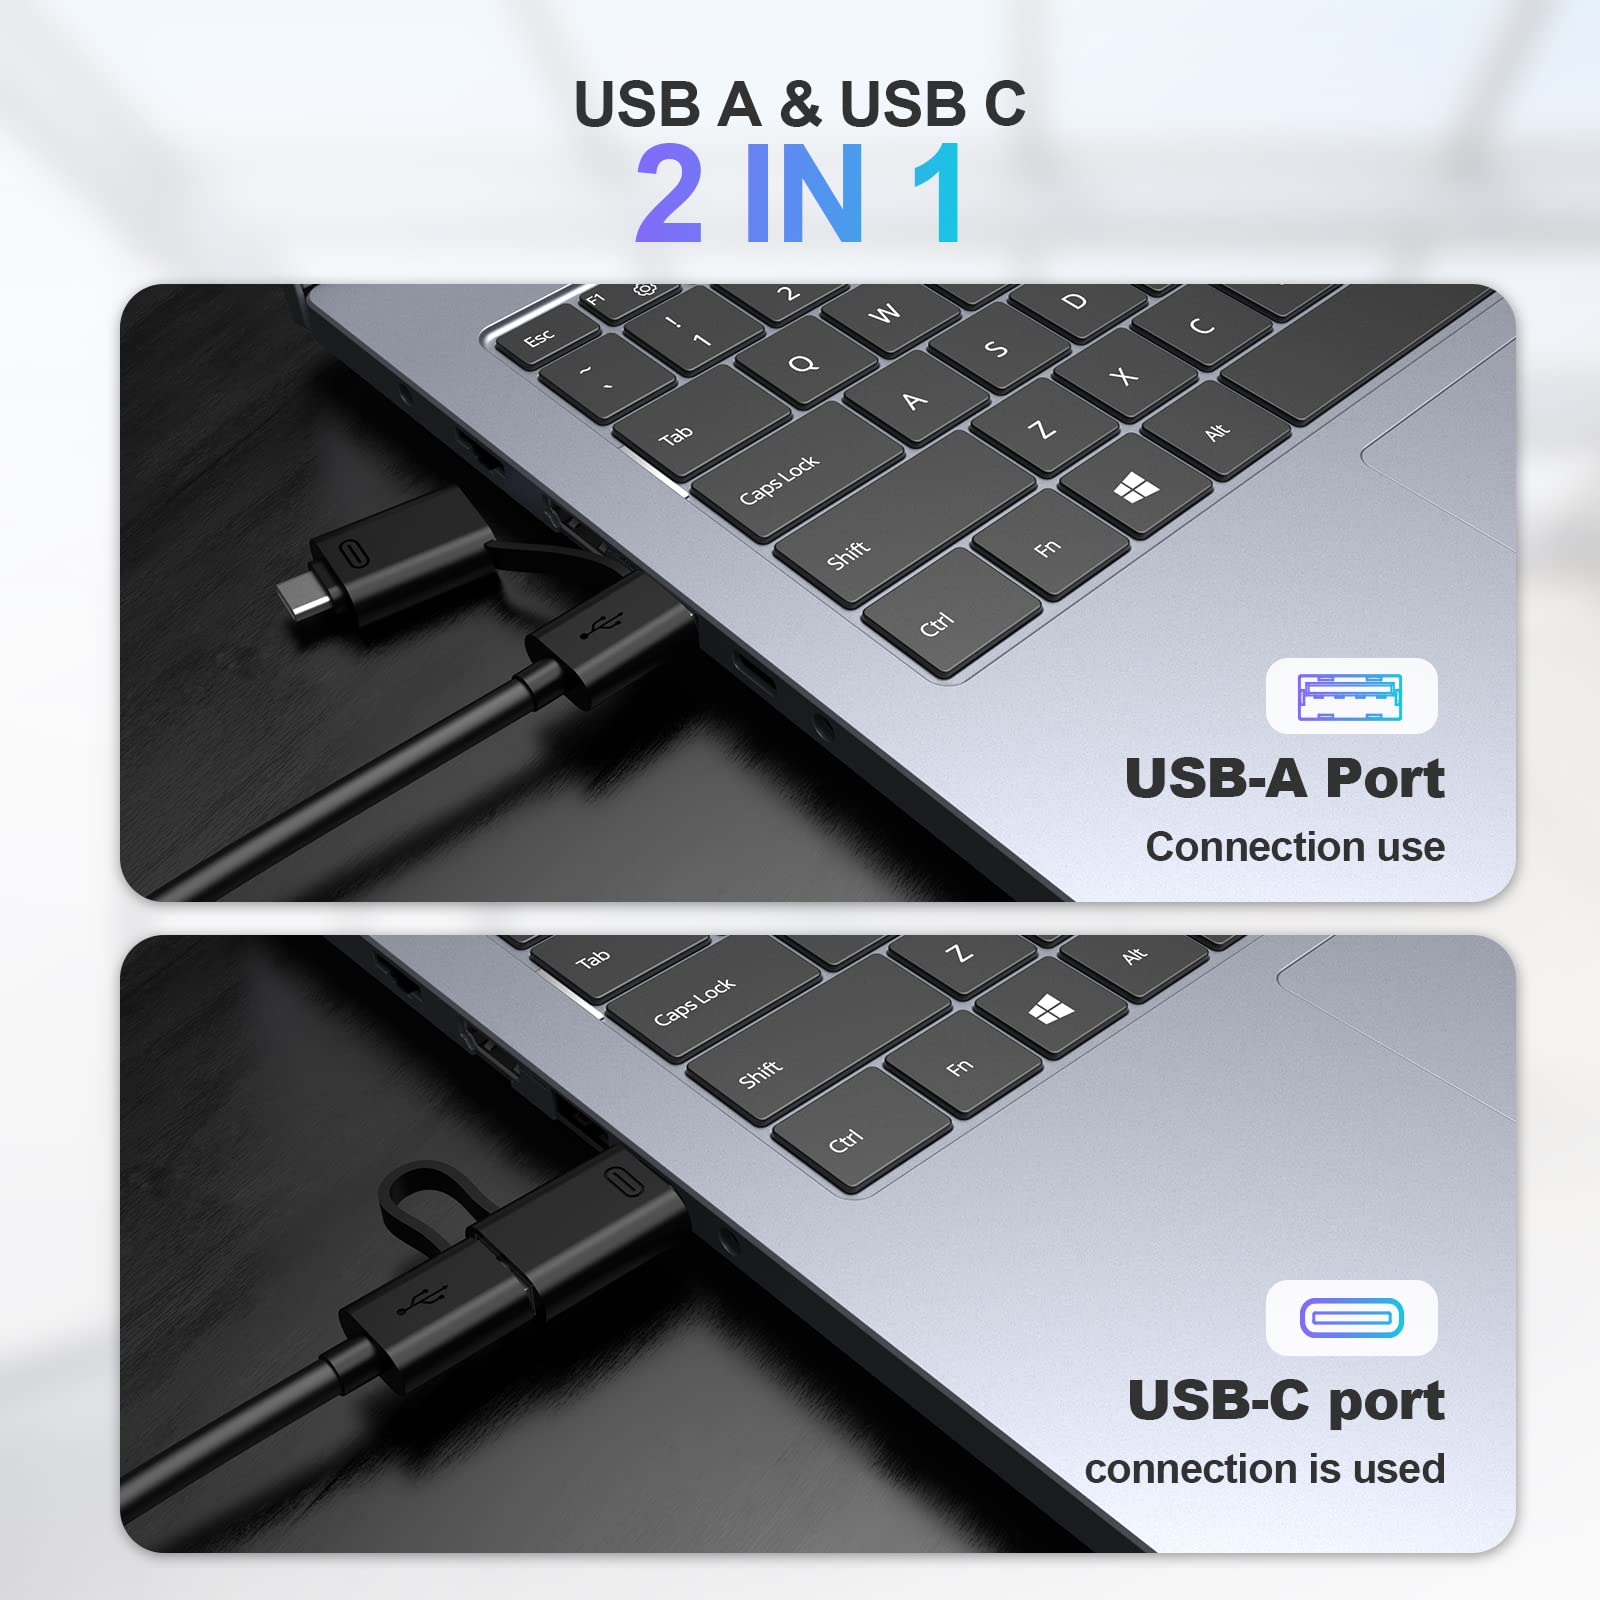 USB 3.0 Hub 5Gbps with USB C Adapter, Ultra Slim USB Adapter USB Splitter USB 3.0 Hub USB 3.0 Adapter with 4 USB 3.0 Port USB Splitter for MacBook, iMac Pro, Mac Mini/Pro, Surface Pro, Dell, HP